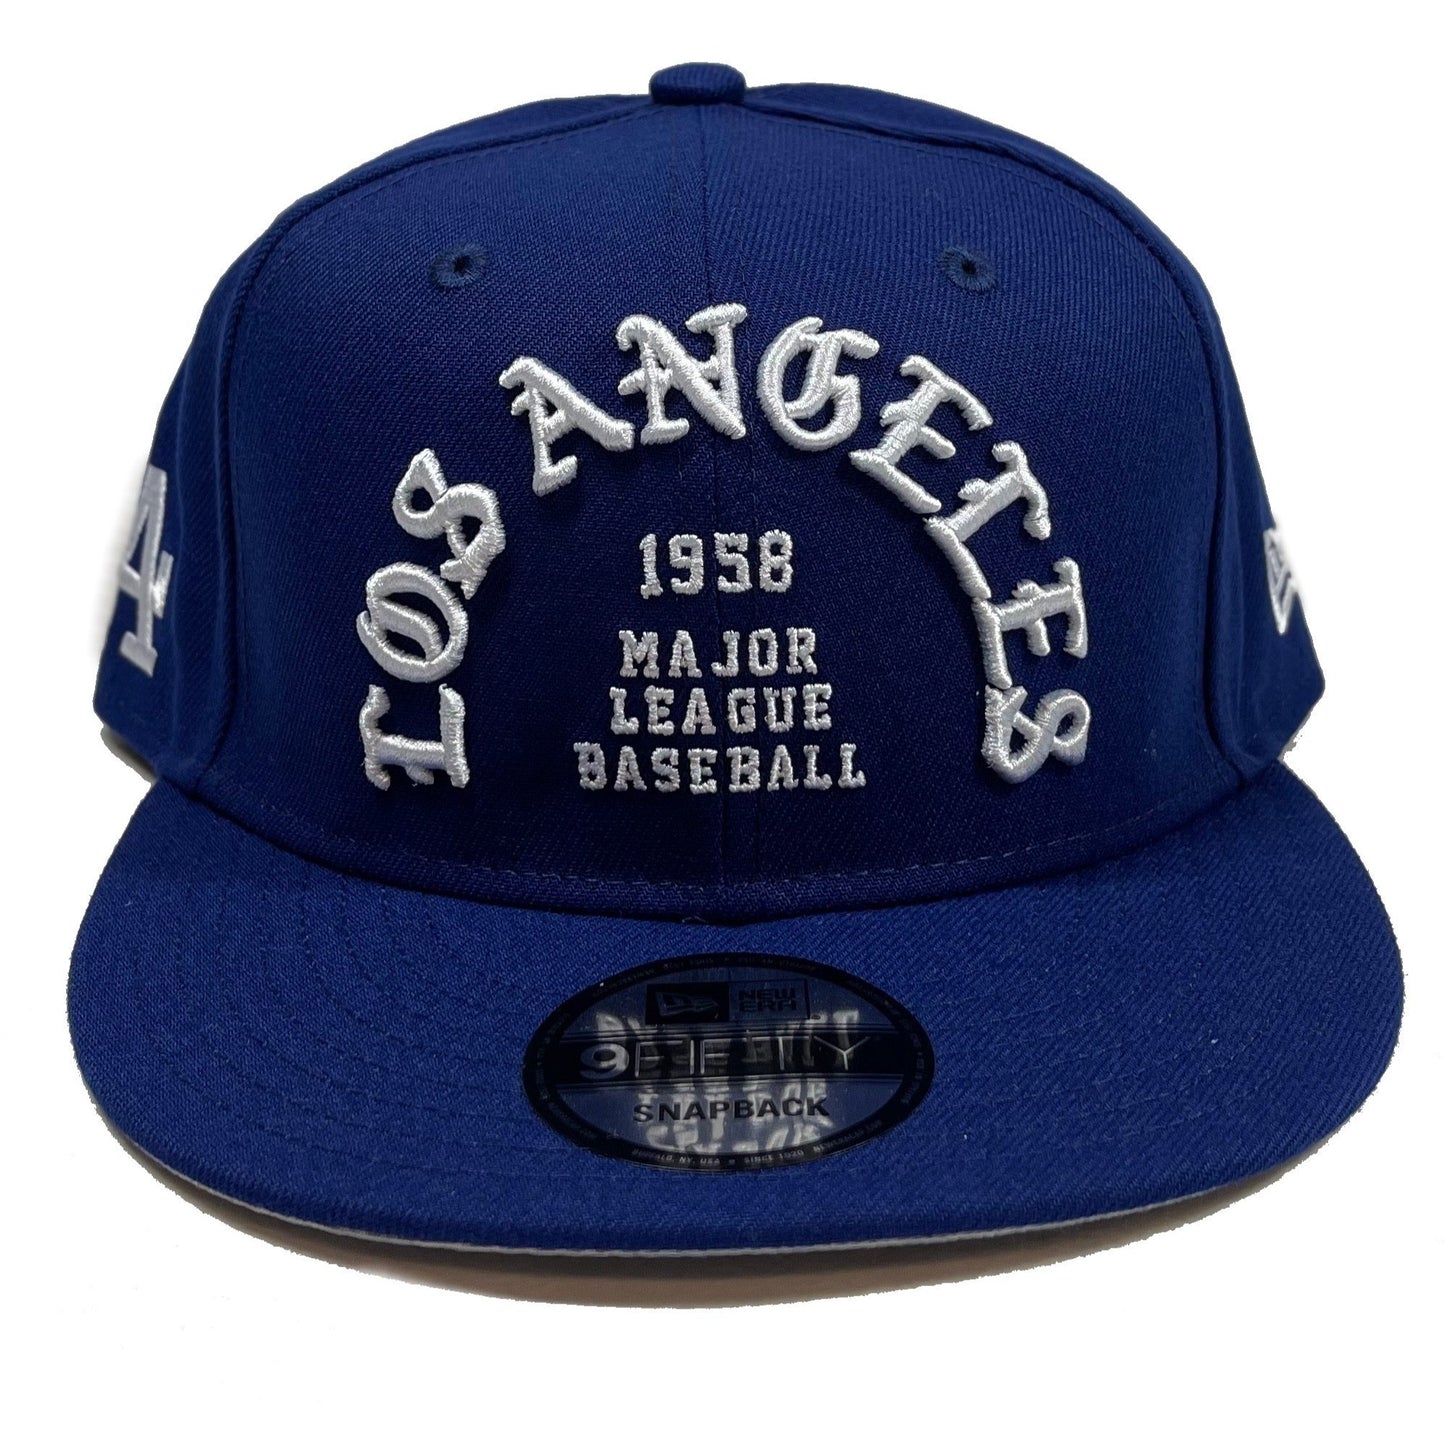 Vintage Dodgers Hat 